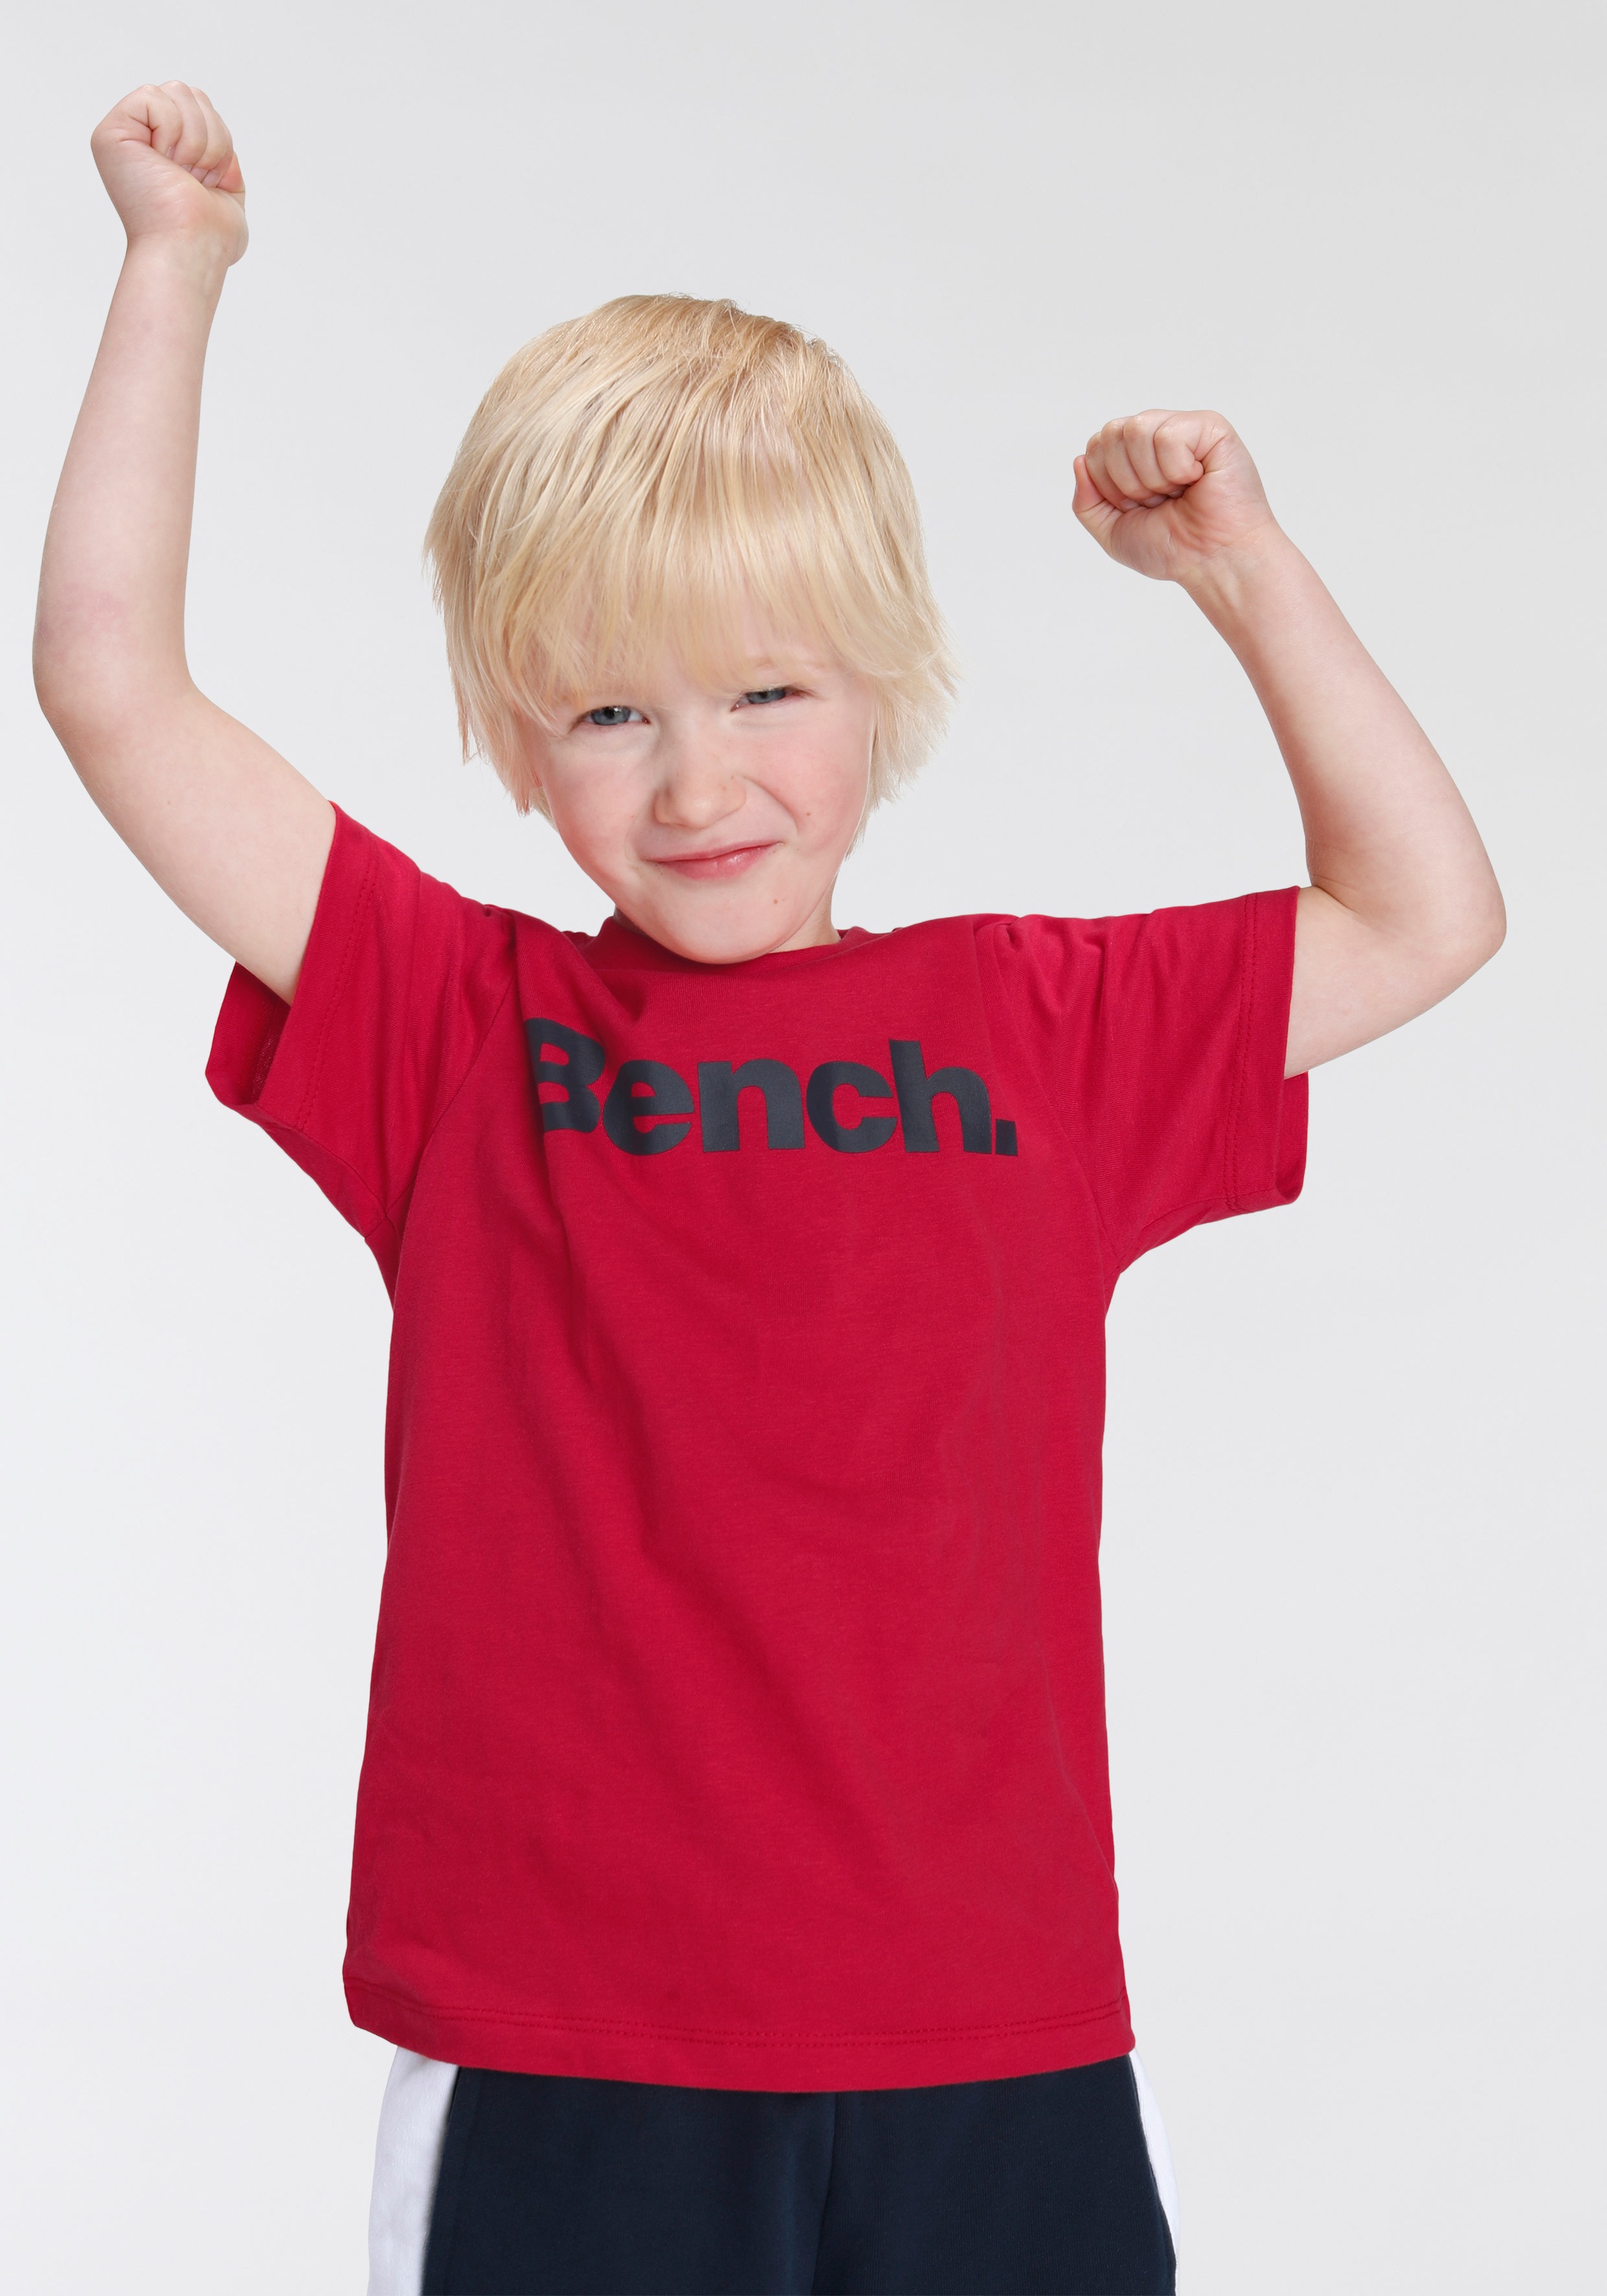 Bench. T-Shirt & Sweatbermudas, (Set, 2 tlg.) im Online-Shop bestellen